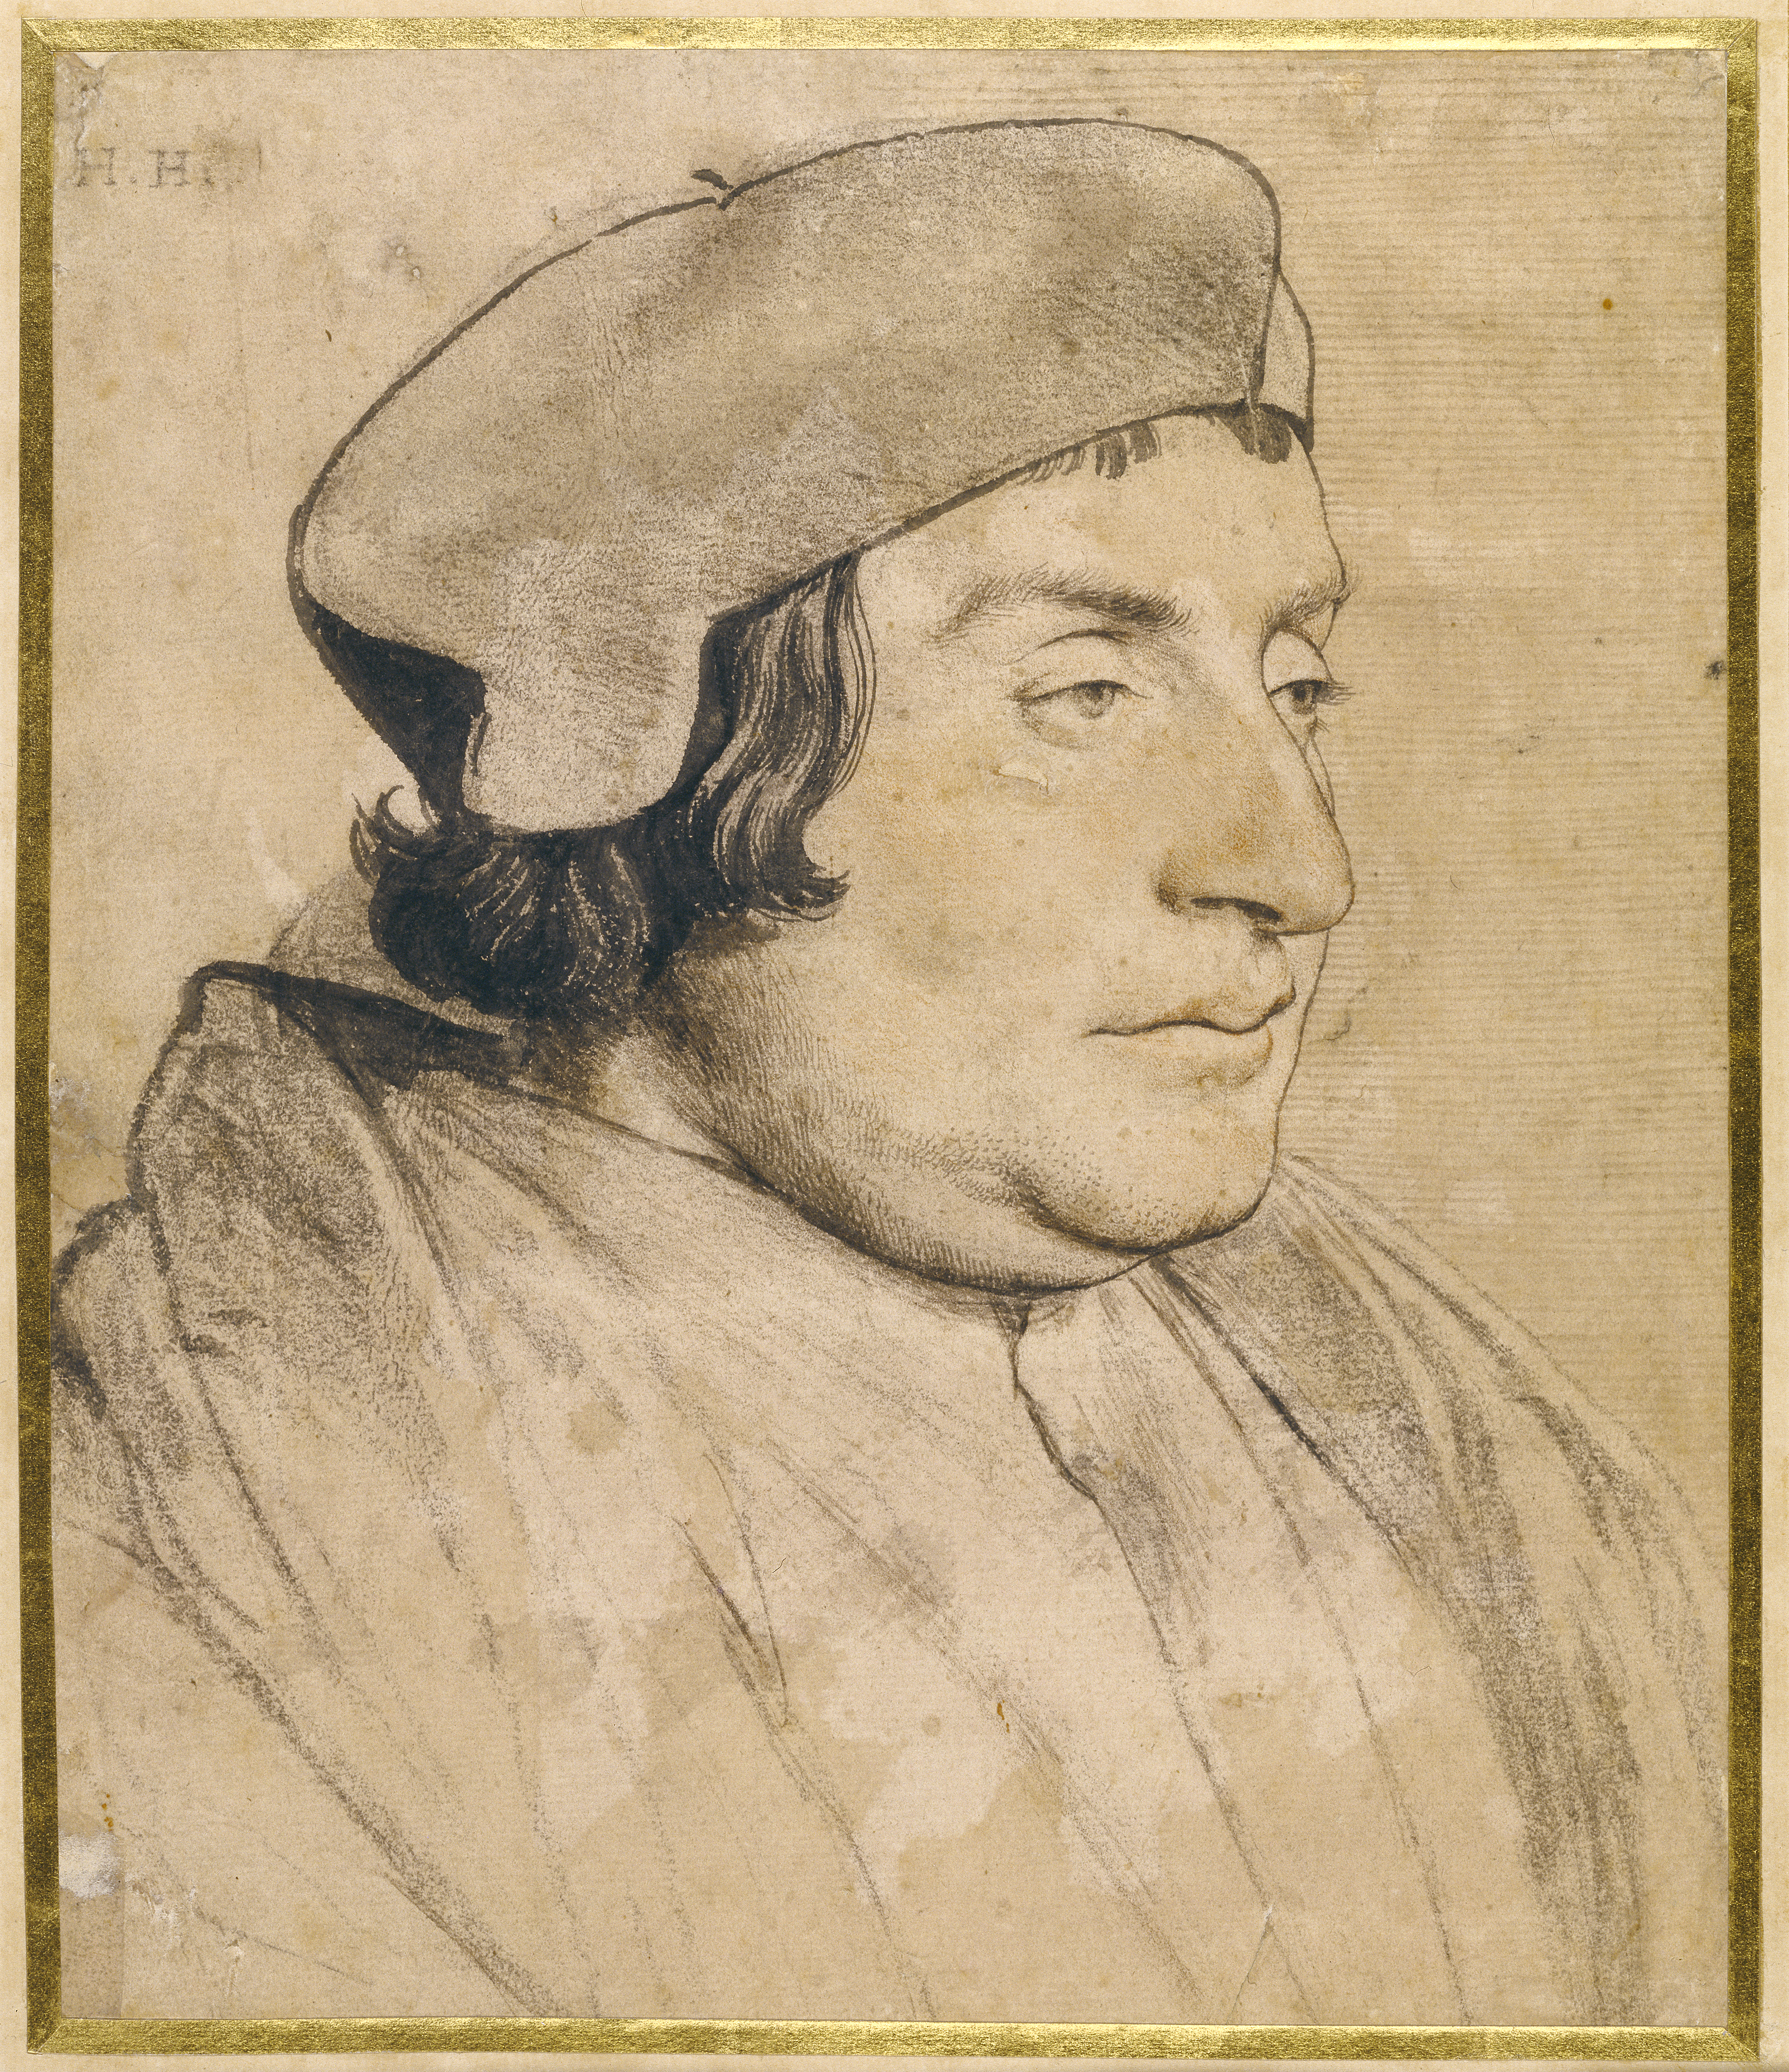 Аили портрет. Ганс Гольбейн младший. Ганс Гольбейн младший портреты. Ганс Гольбейн младший 1497-1543. Ганс Гольбейн младший автопортрет.